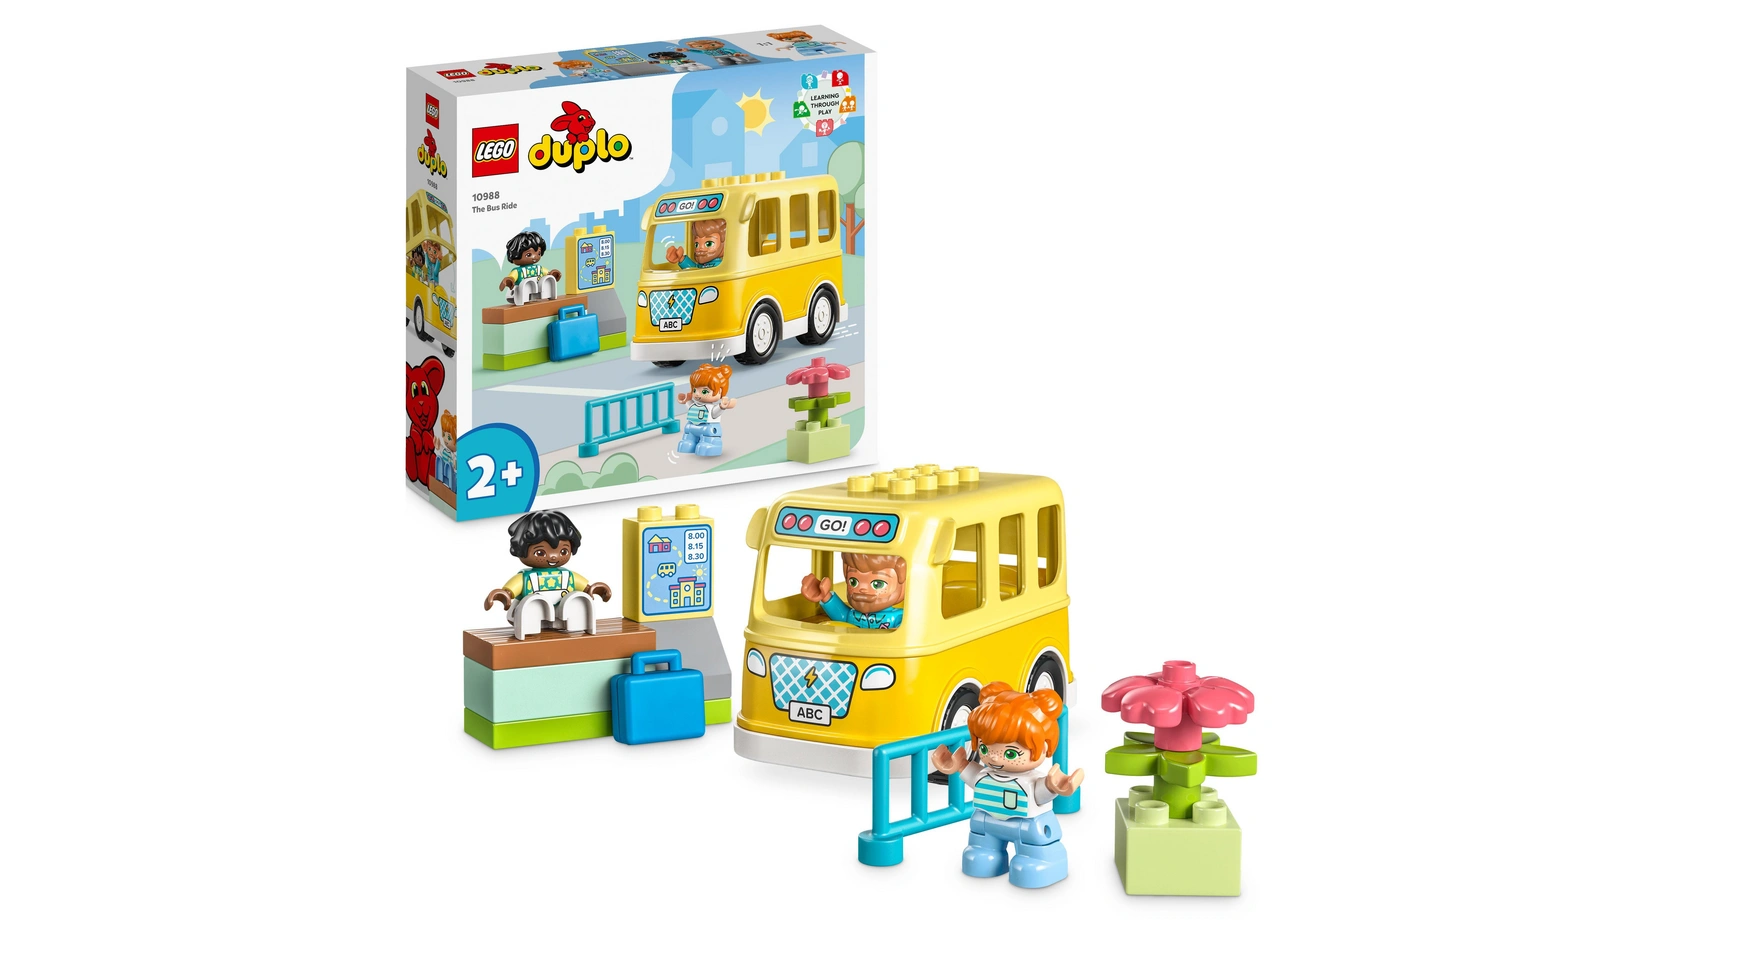 Lego DUPLO Поездка на автобусе, развивающая игрушка с игрушечным автобусом lego duplo town ветряная турбина и электромобиль развивающая игрушка для детей от 2 лет и старше